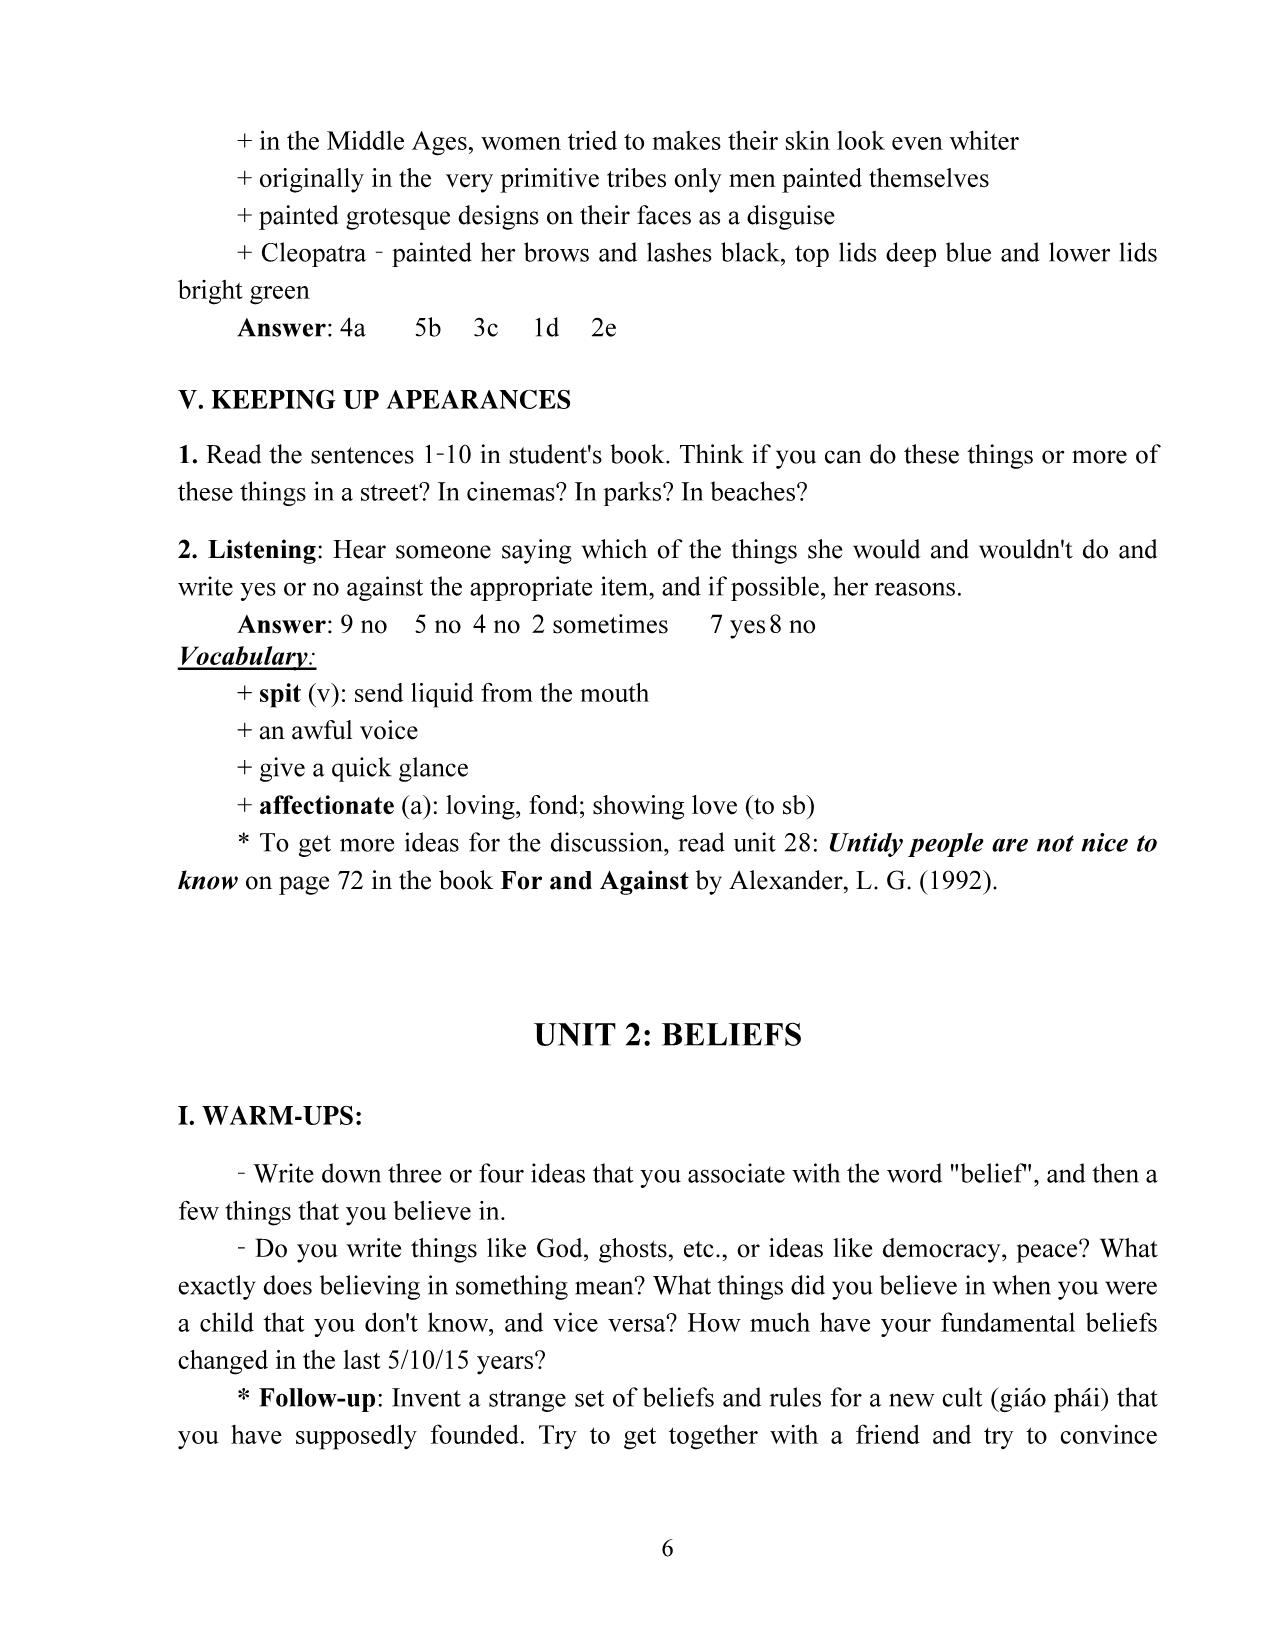 Giáo trình Speaking 3 (Phần 1) trang 6